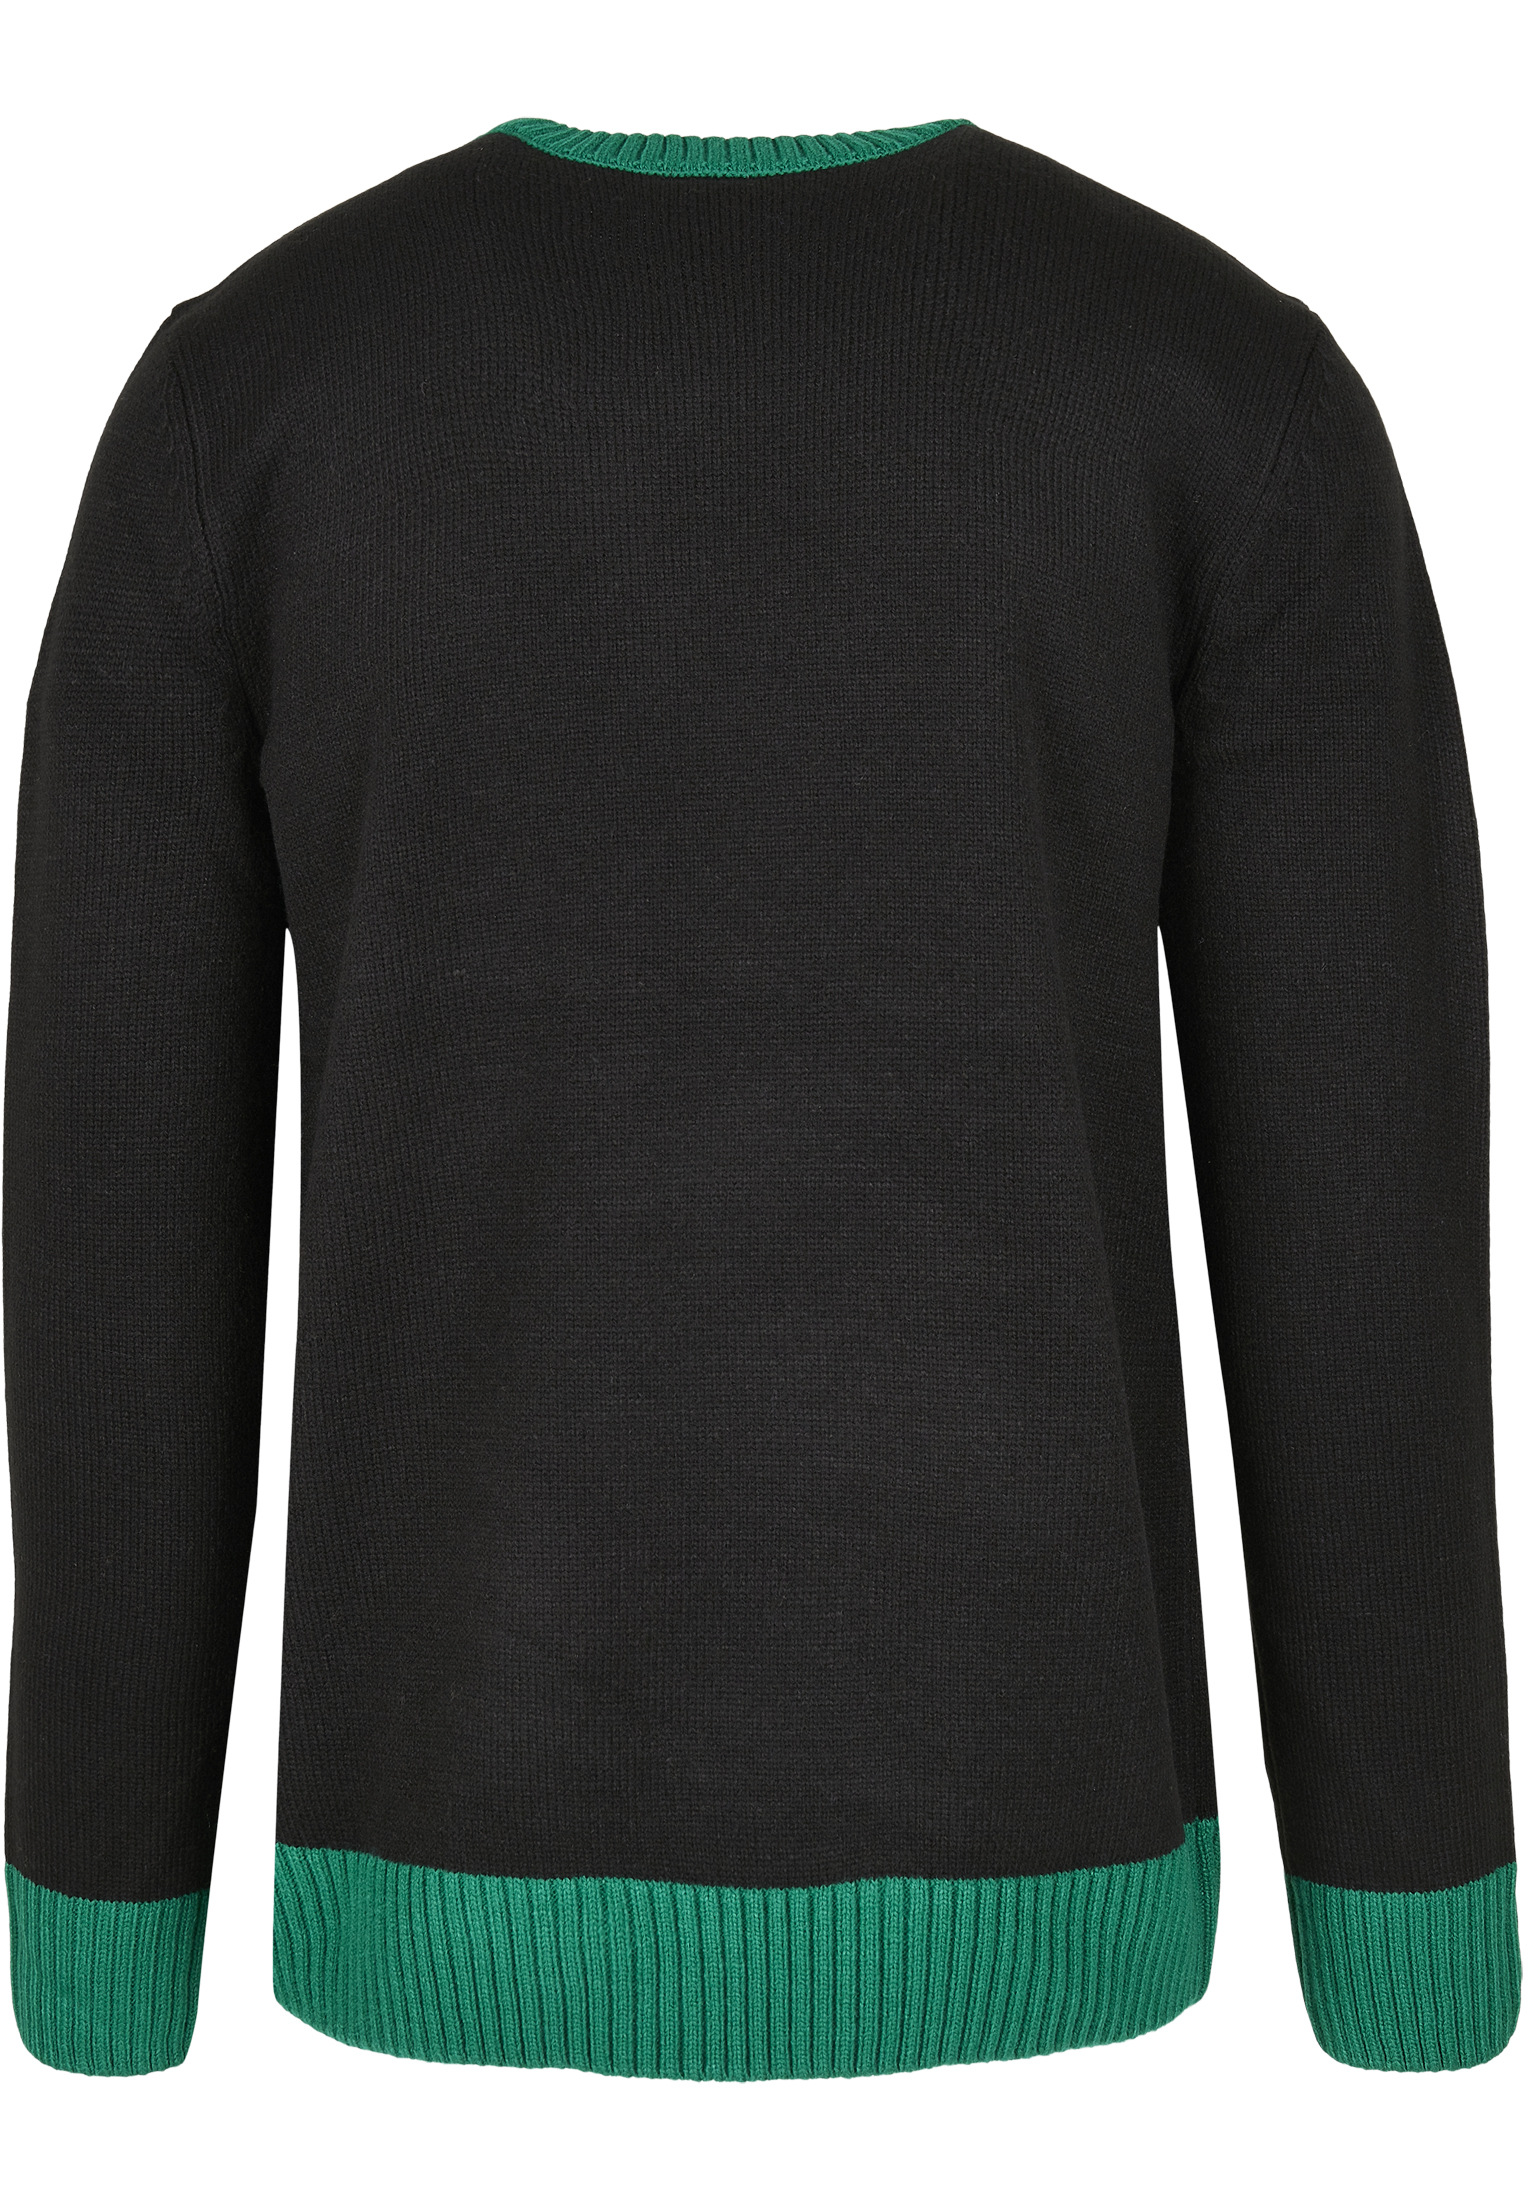 Crewnecks Ho Ho Ho Sweater in Farbe black